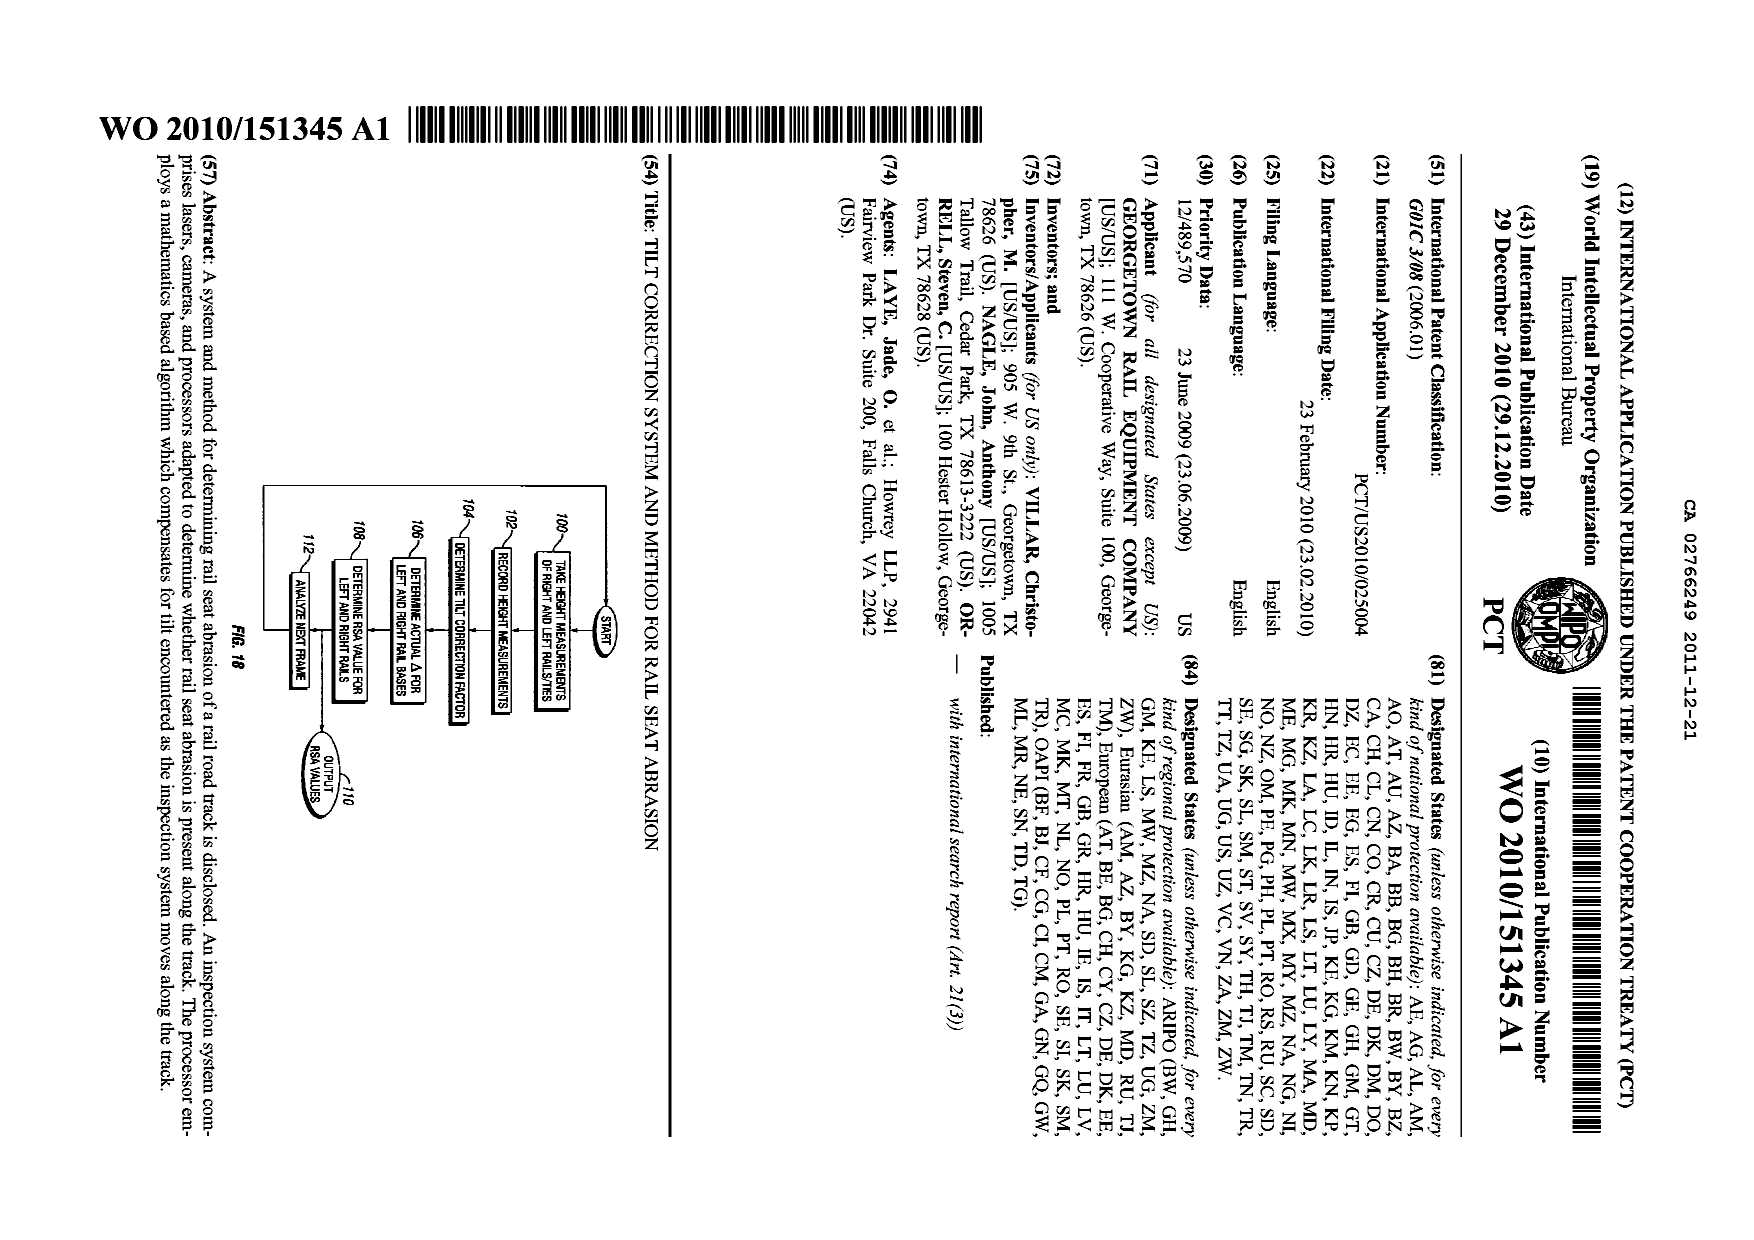 Document de brevet canadien 2766249. Abrégé 20101221. Image 1 de 1